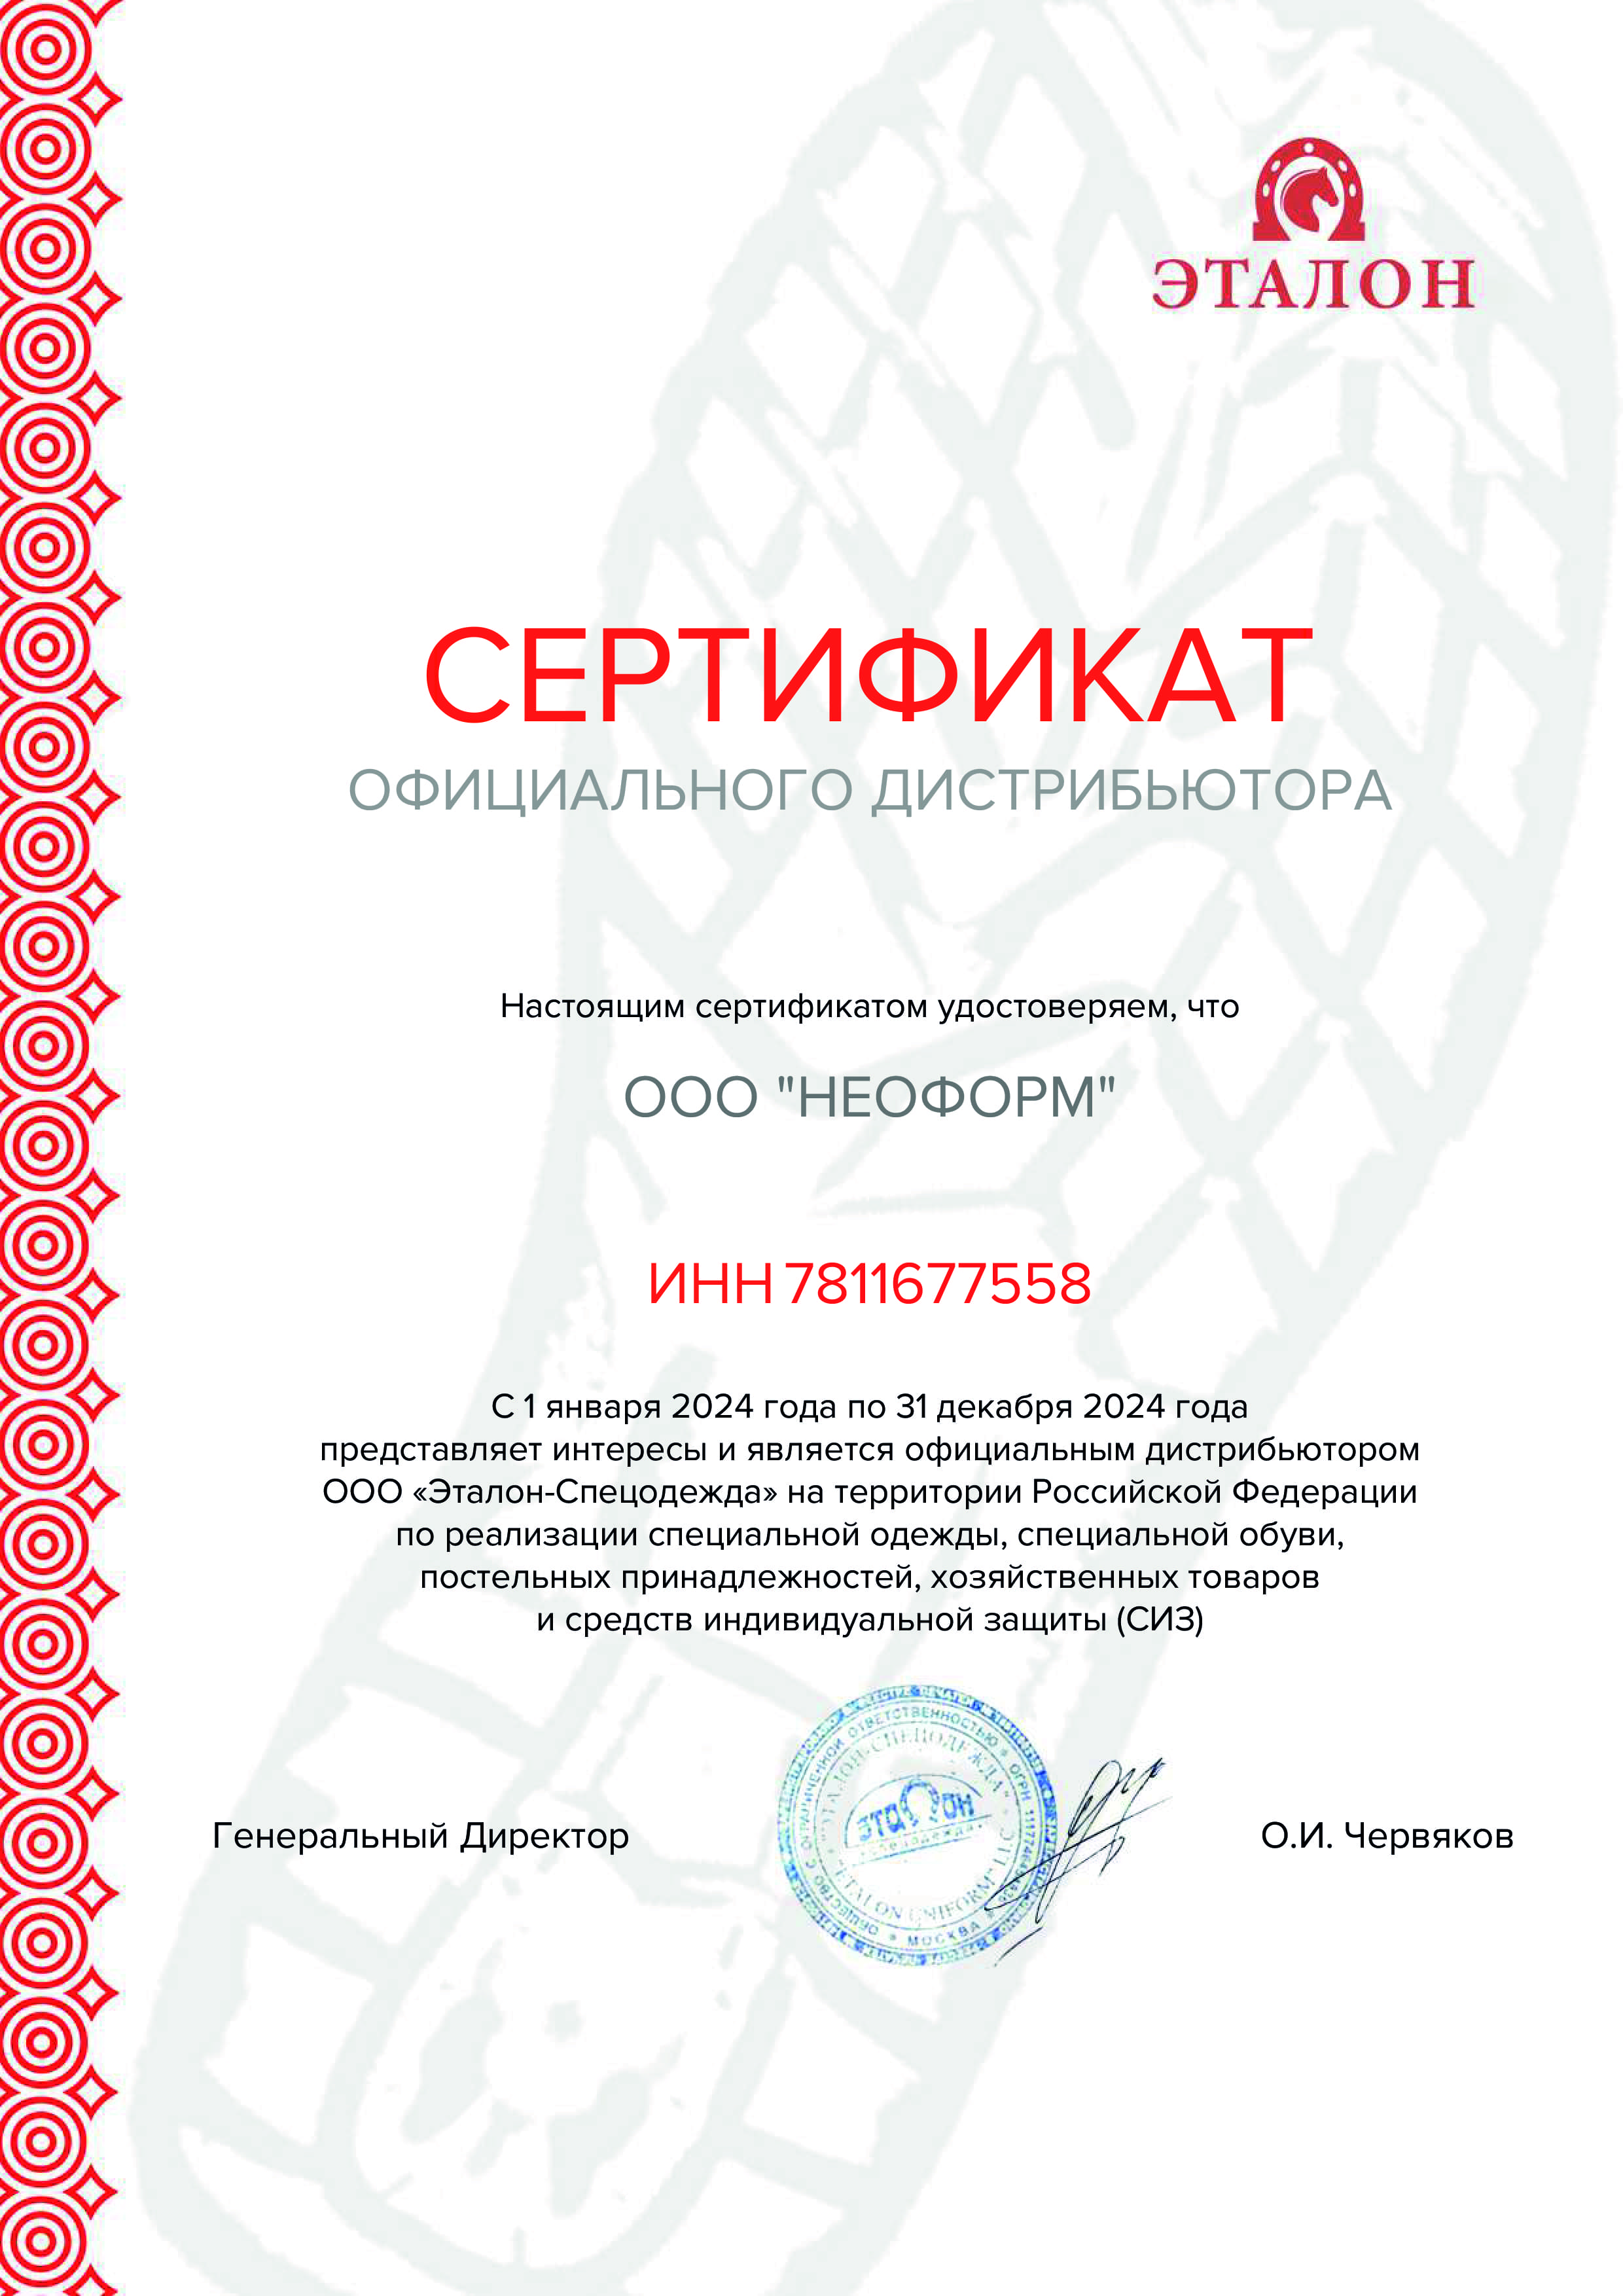 Сертификат официального дистрибьютора Эталон